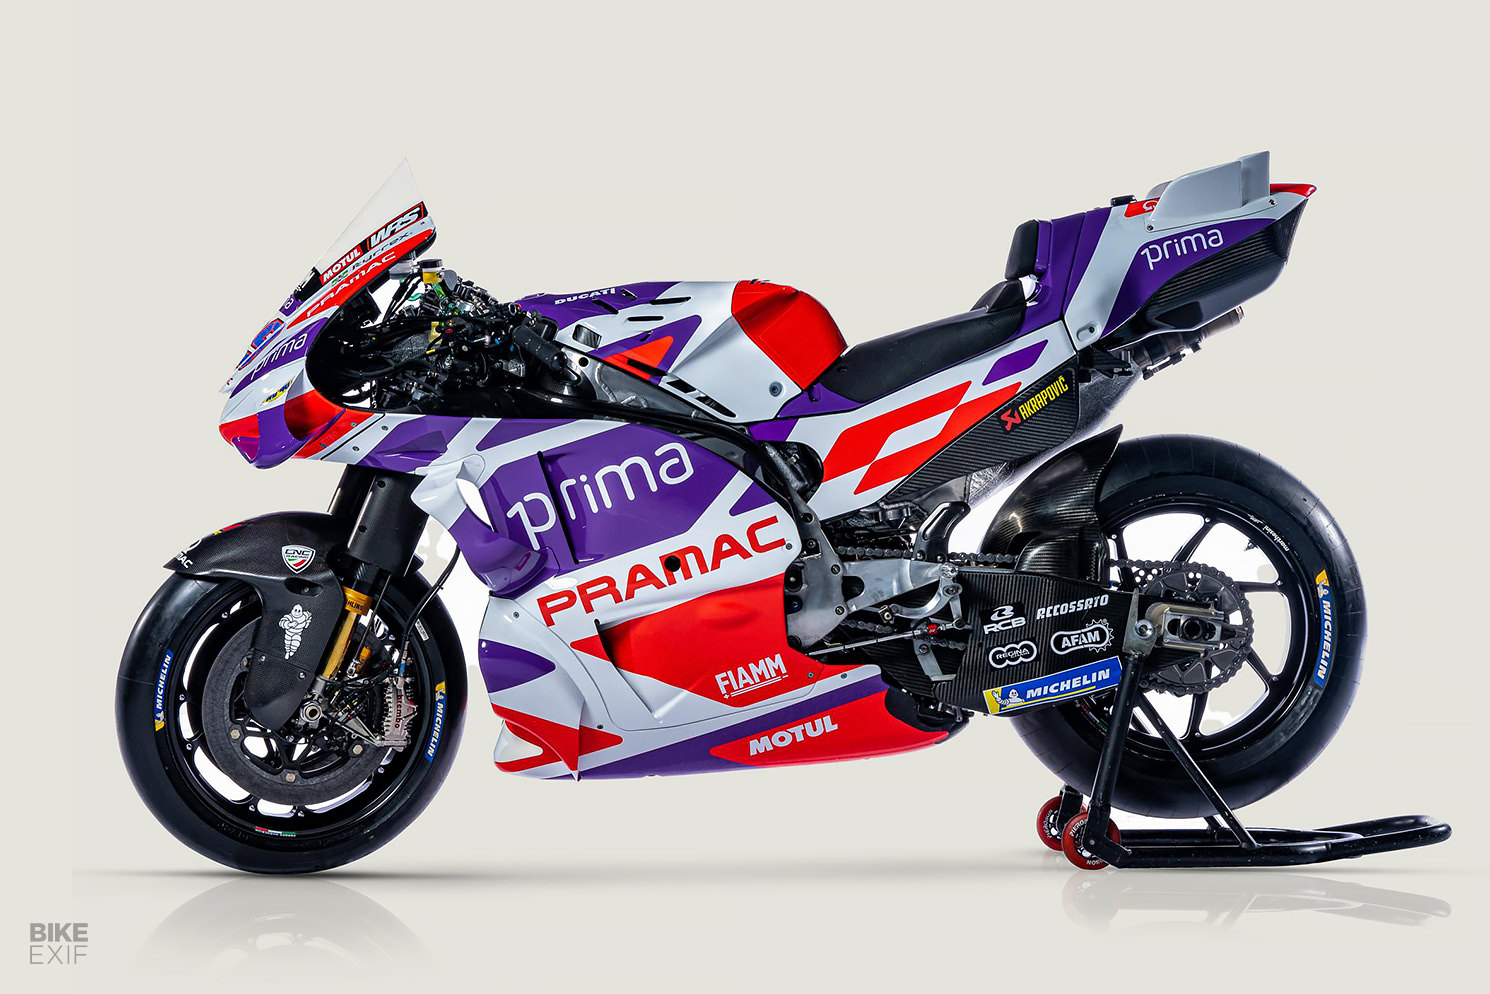 Bicycle Prima Pramac Racing Ducati MotoGP